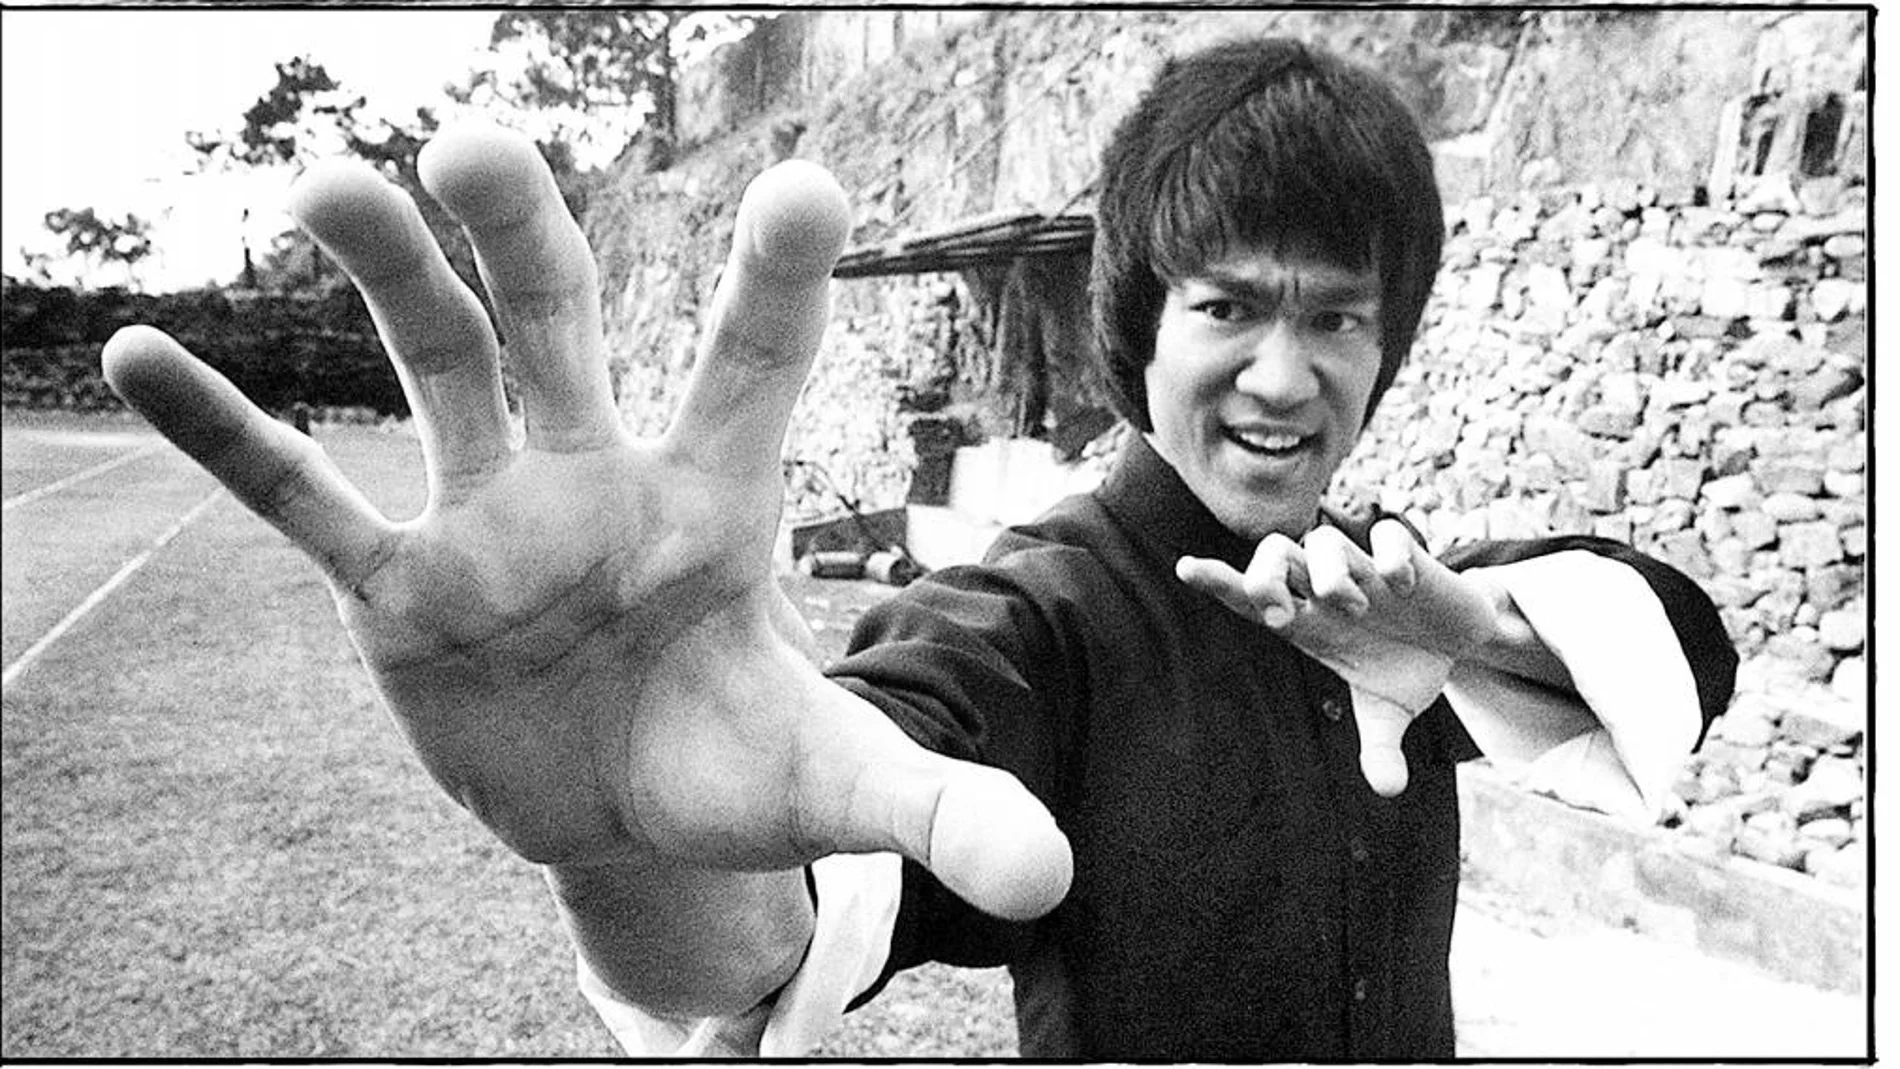 Bruce Lee es un personaje mítico en la cultura popular y el cine de artes marciales, incluso se especuló si murió realmente